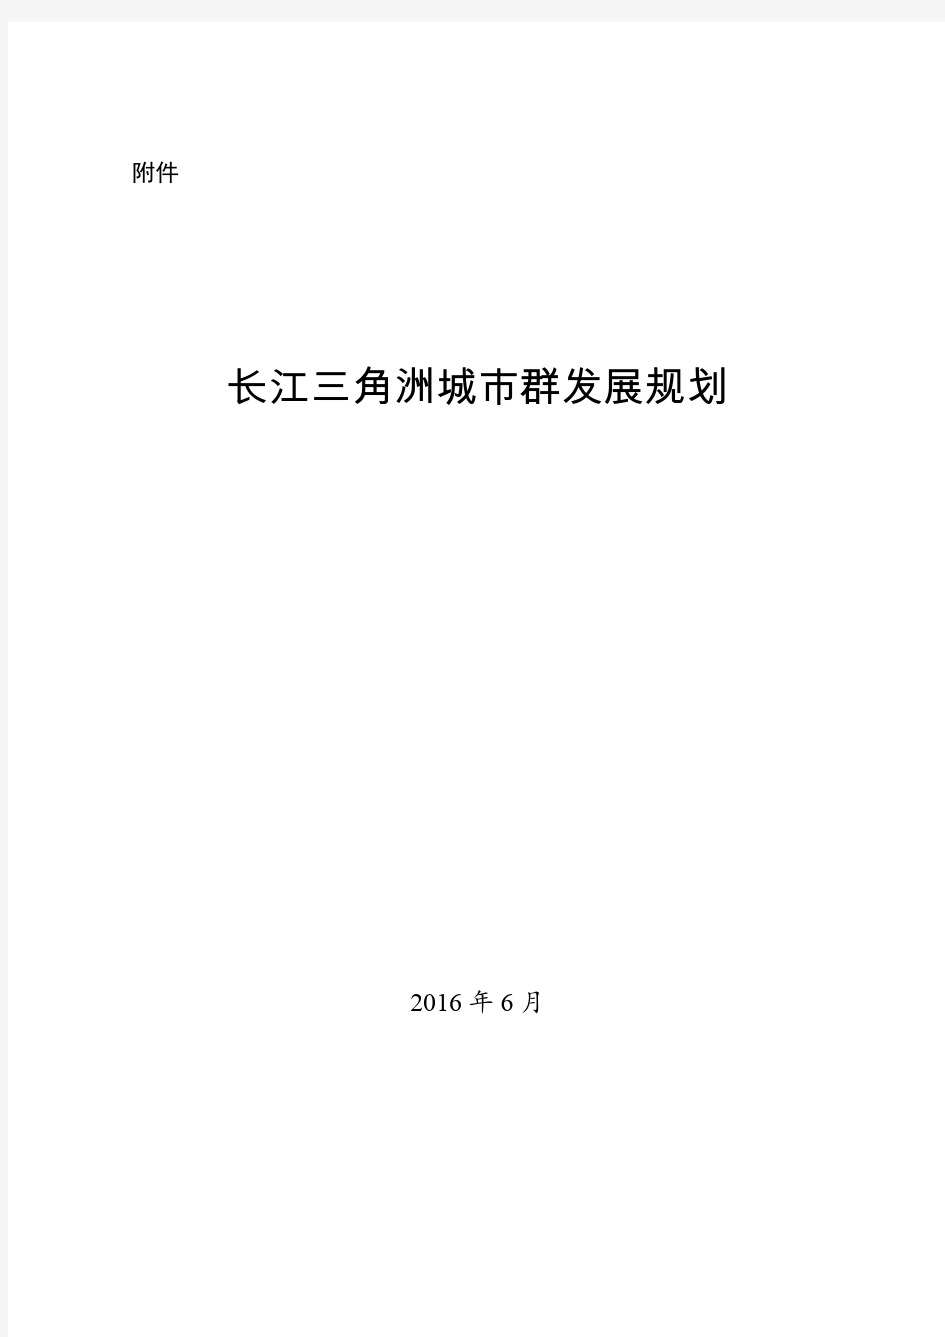 长江三角洲城市群发展规划(2015-2030)